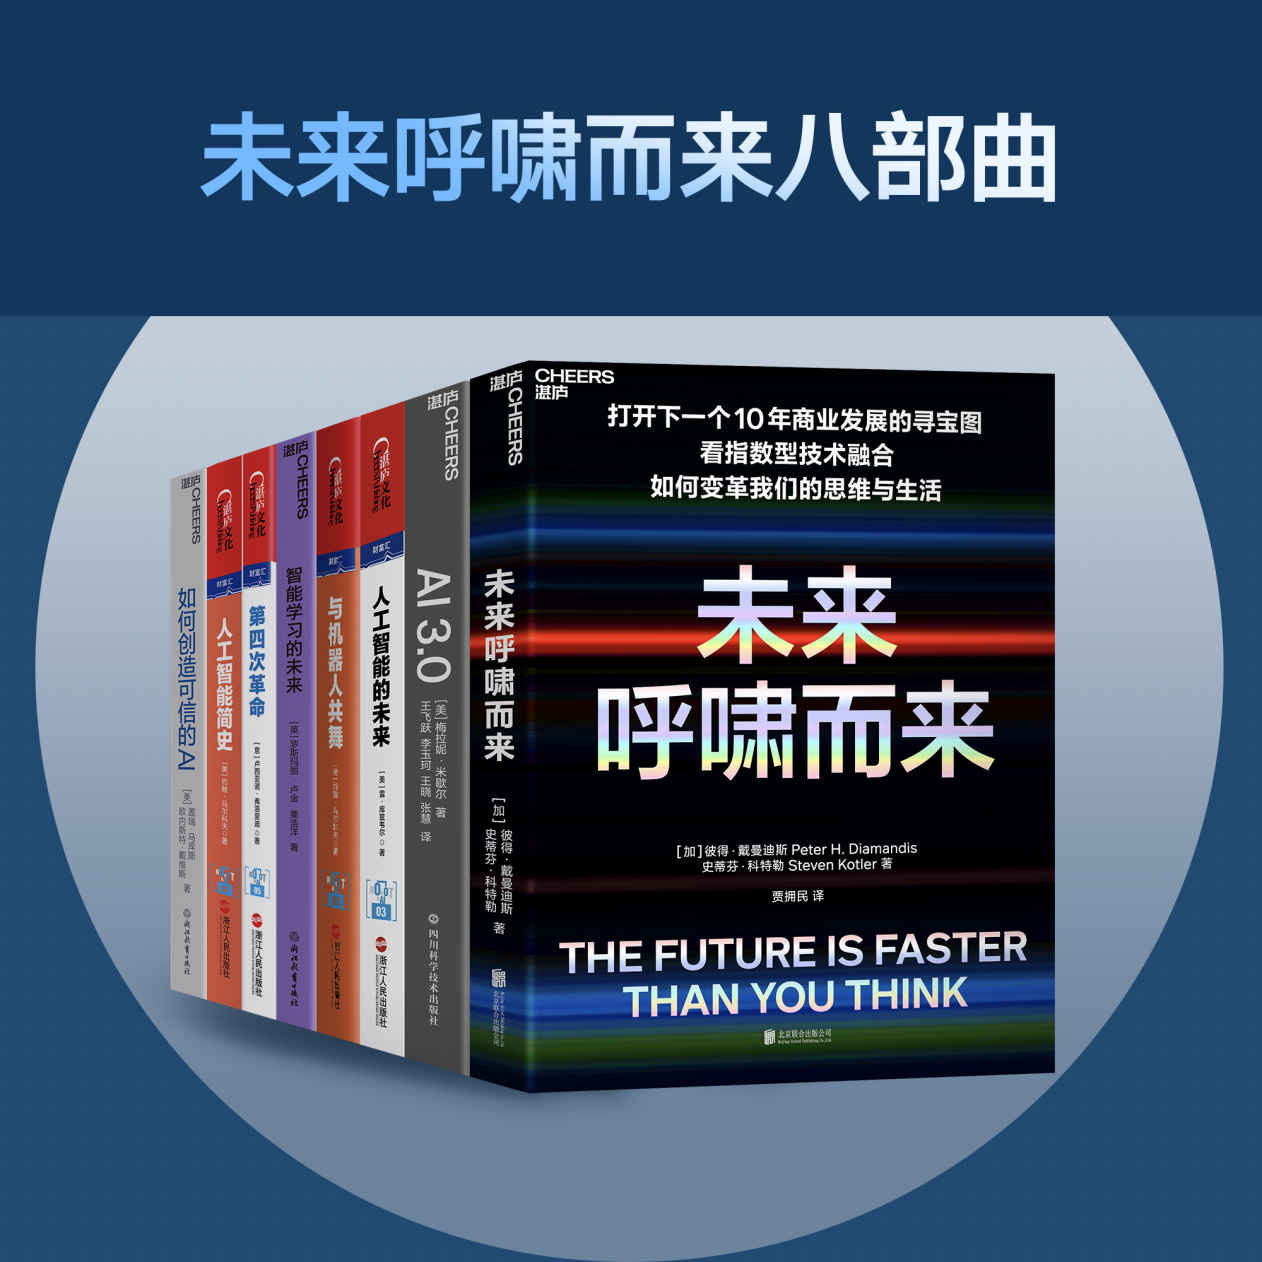 未来呼啸而来八部曲(打开下一个未来商业发展的寻宝图！看未来，智能技术如何变革我们的思维与生活,多家权威媒体选出的2020年”必读商业新书”,清华大学和上海交大EMBA 2021年选定图书)